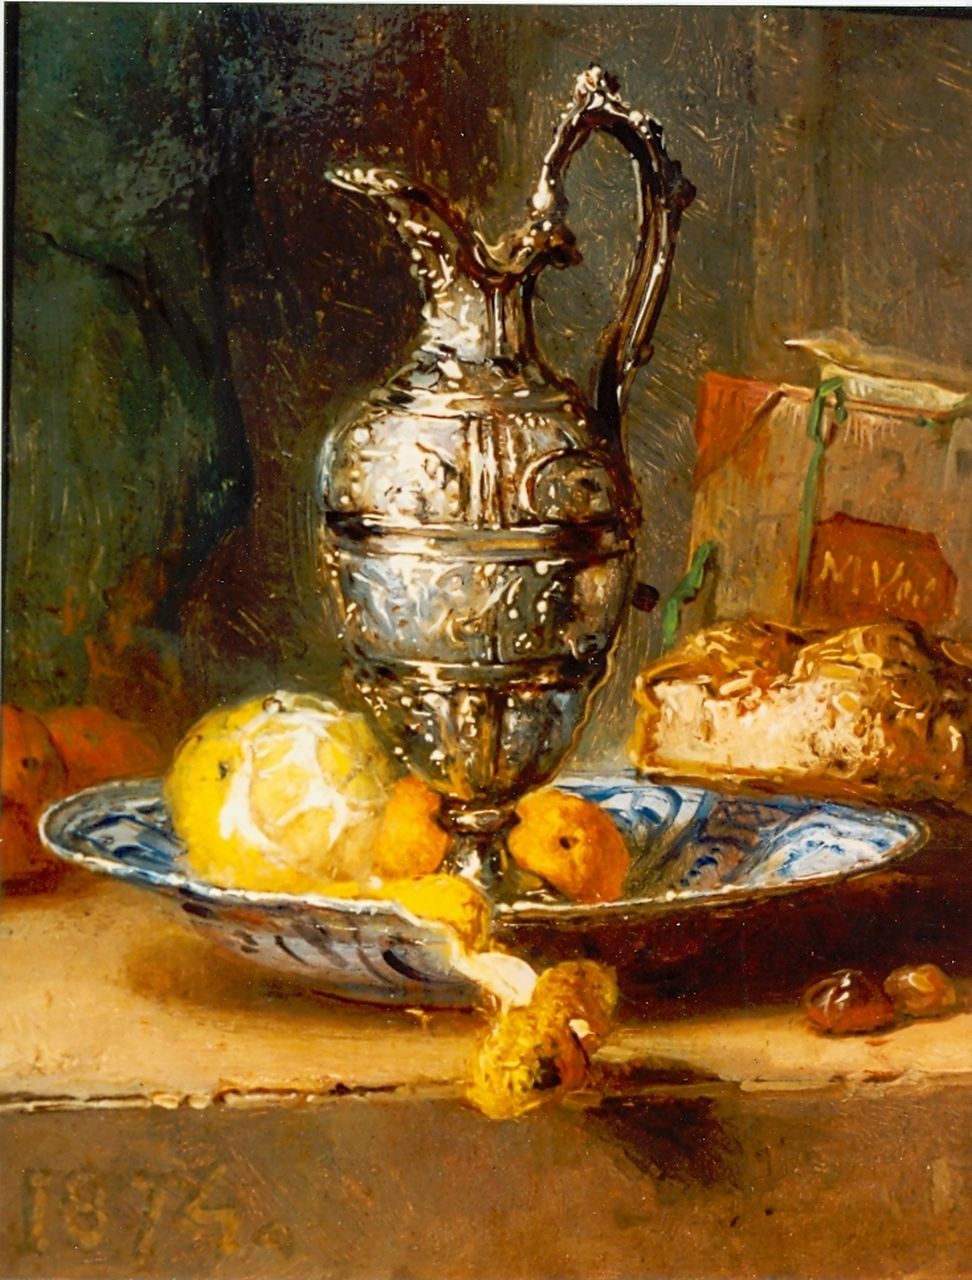 Vos M.  | Maria Vos, Stilleven met zilveren vaas, olieverf op paneel 14,0 x 11,5 cm, gesigneerd linksonder en gedateerd 1874